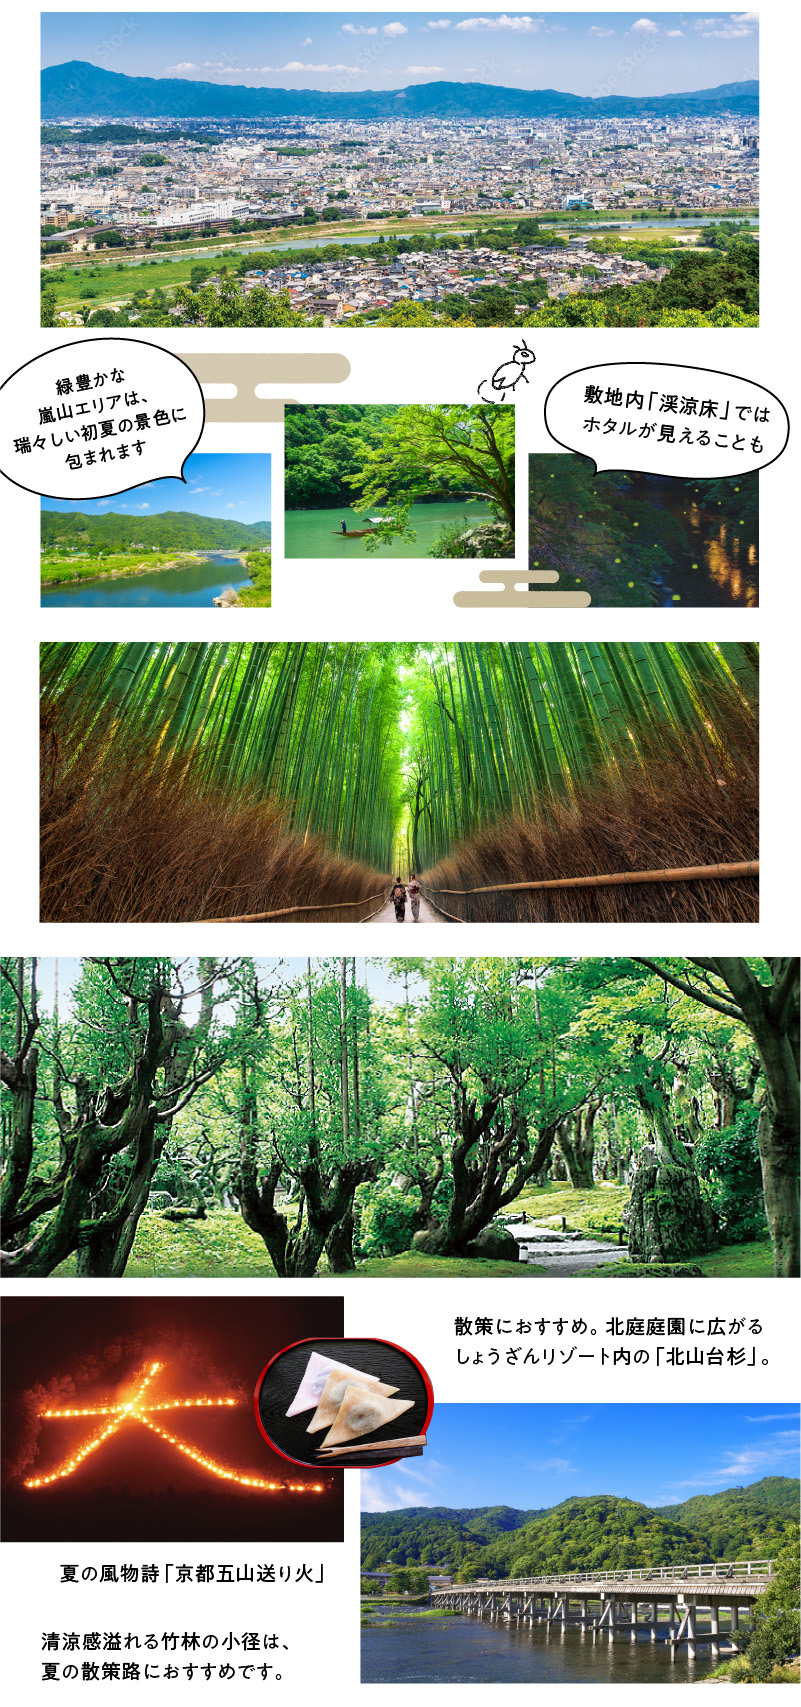 緑豊かな嵐山エリアは、瑞々しい初夏の景色に包まれます。